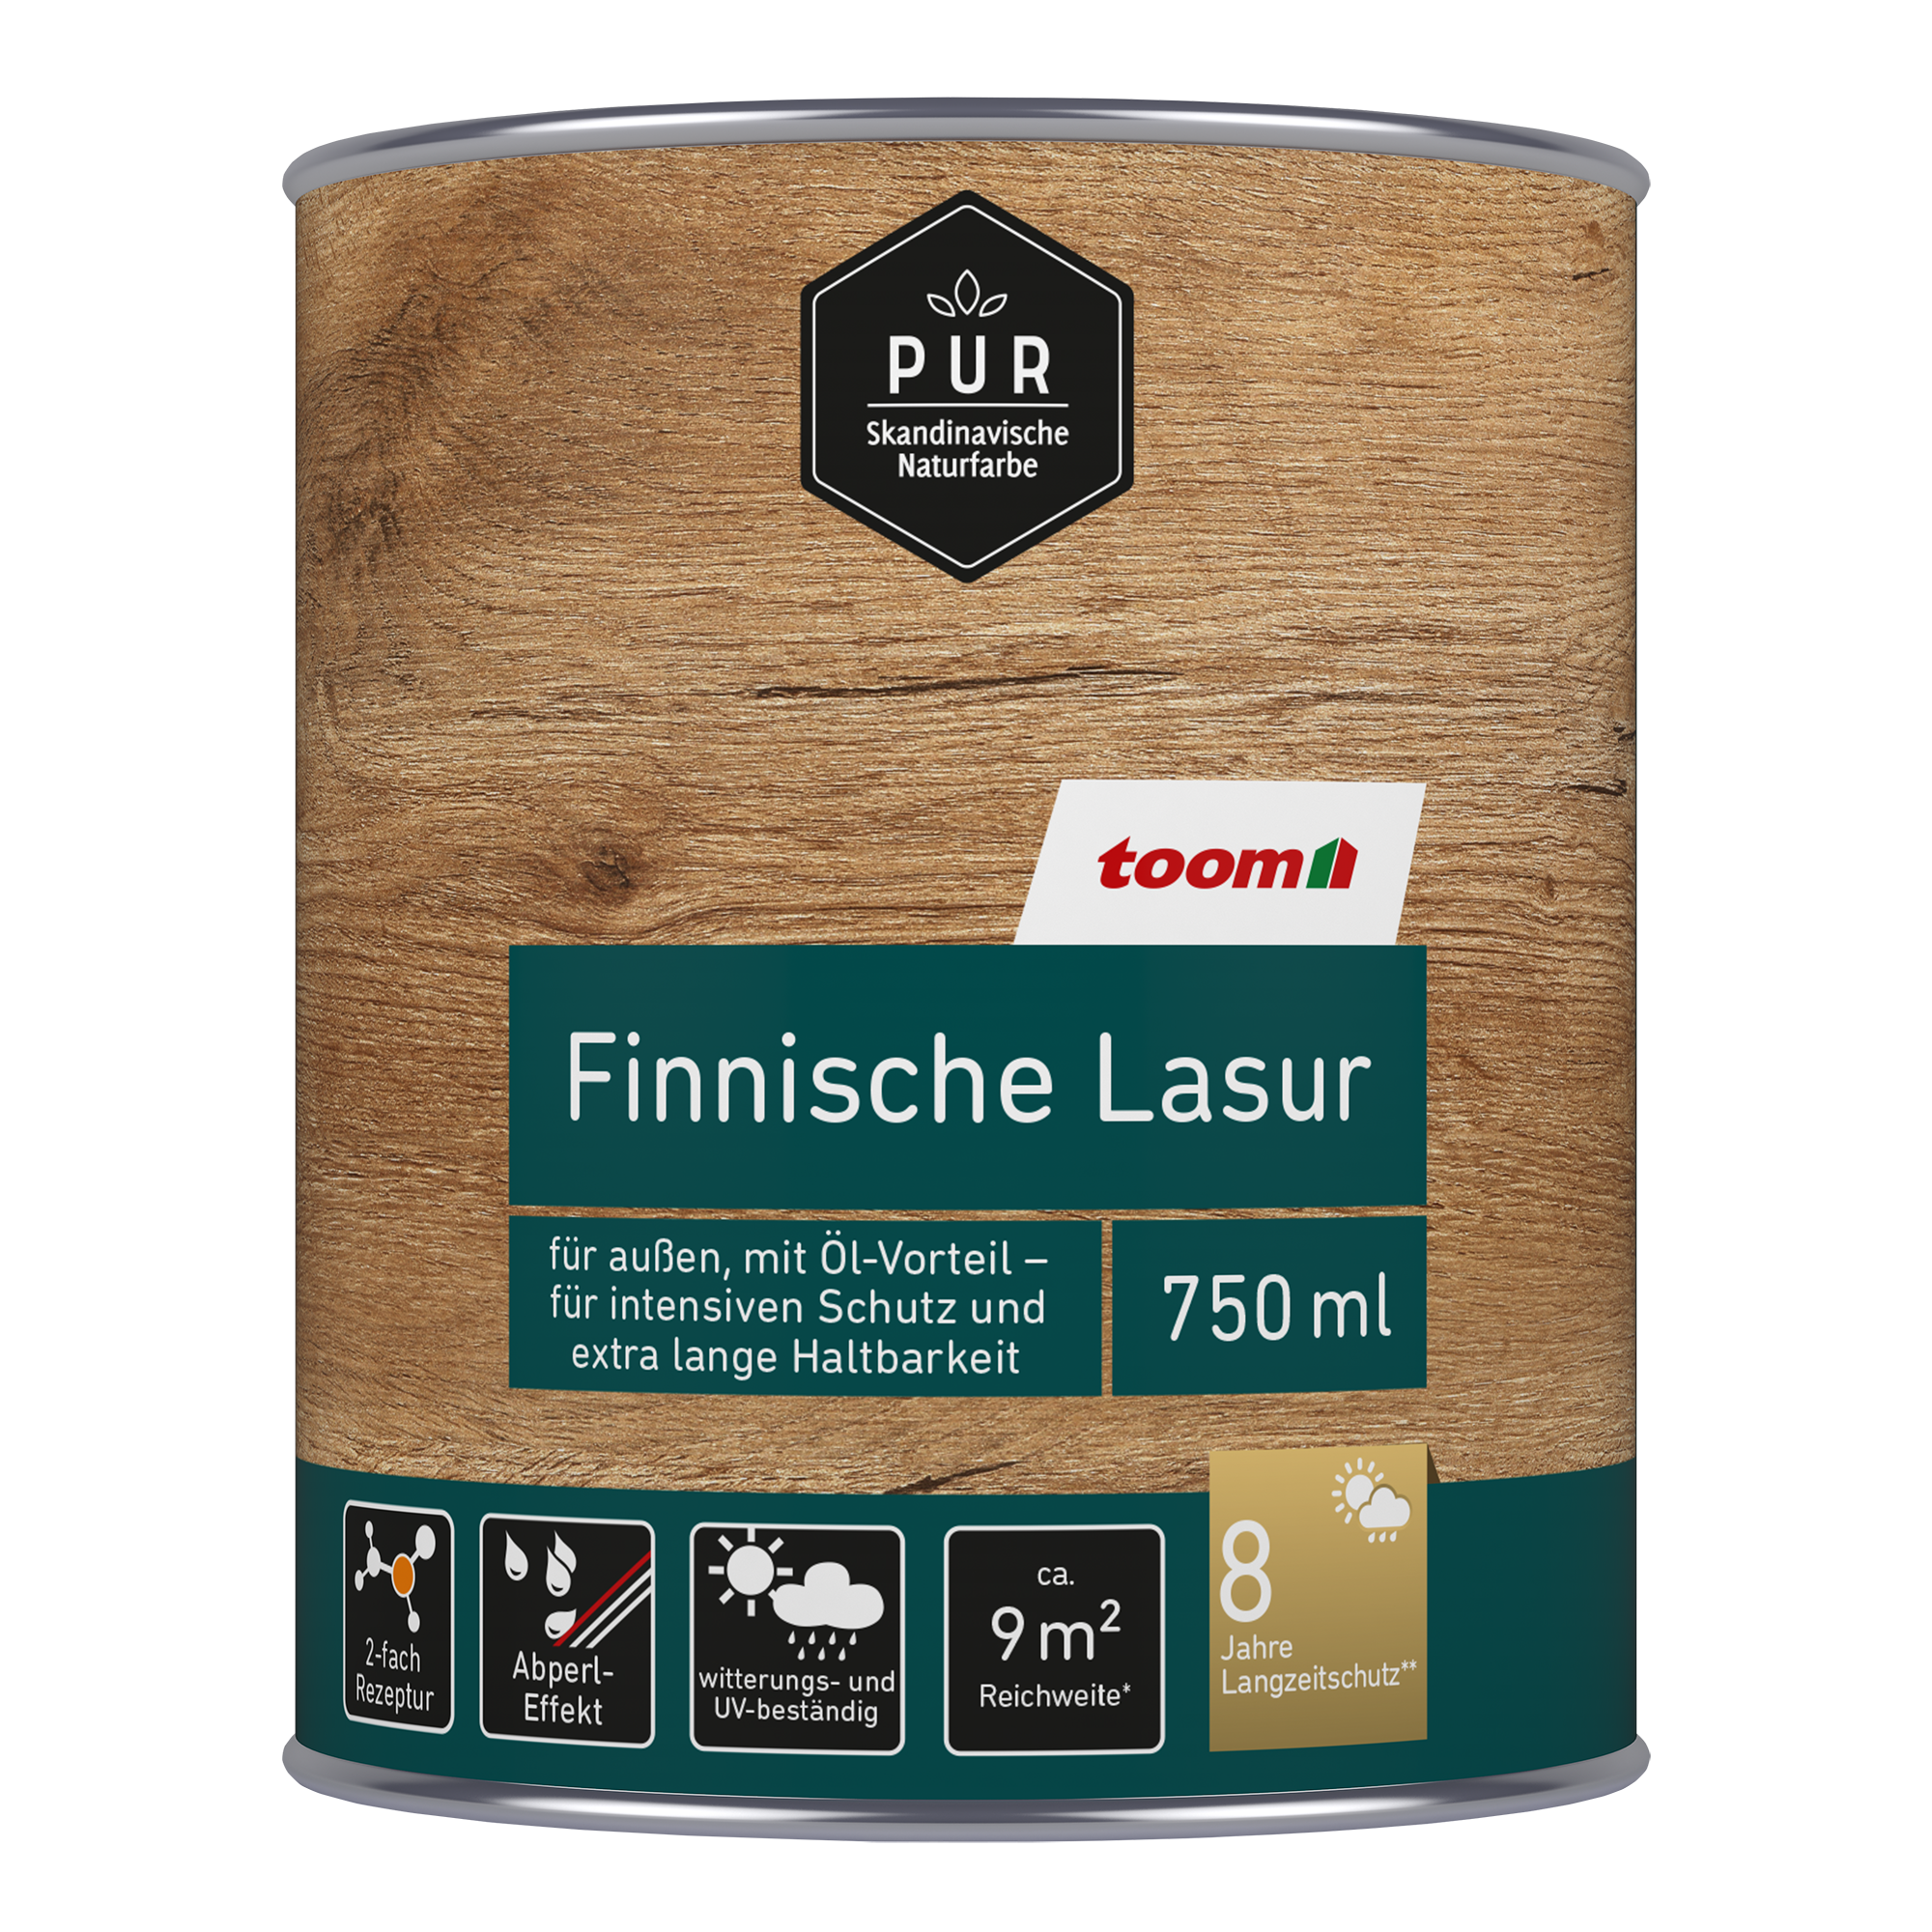 Finnische Lasur nussbaumfarben dunkel 750 ml + product picture